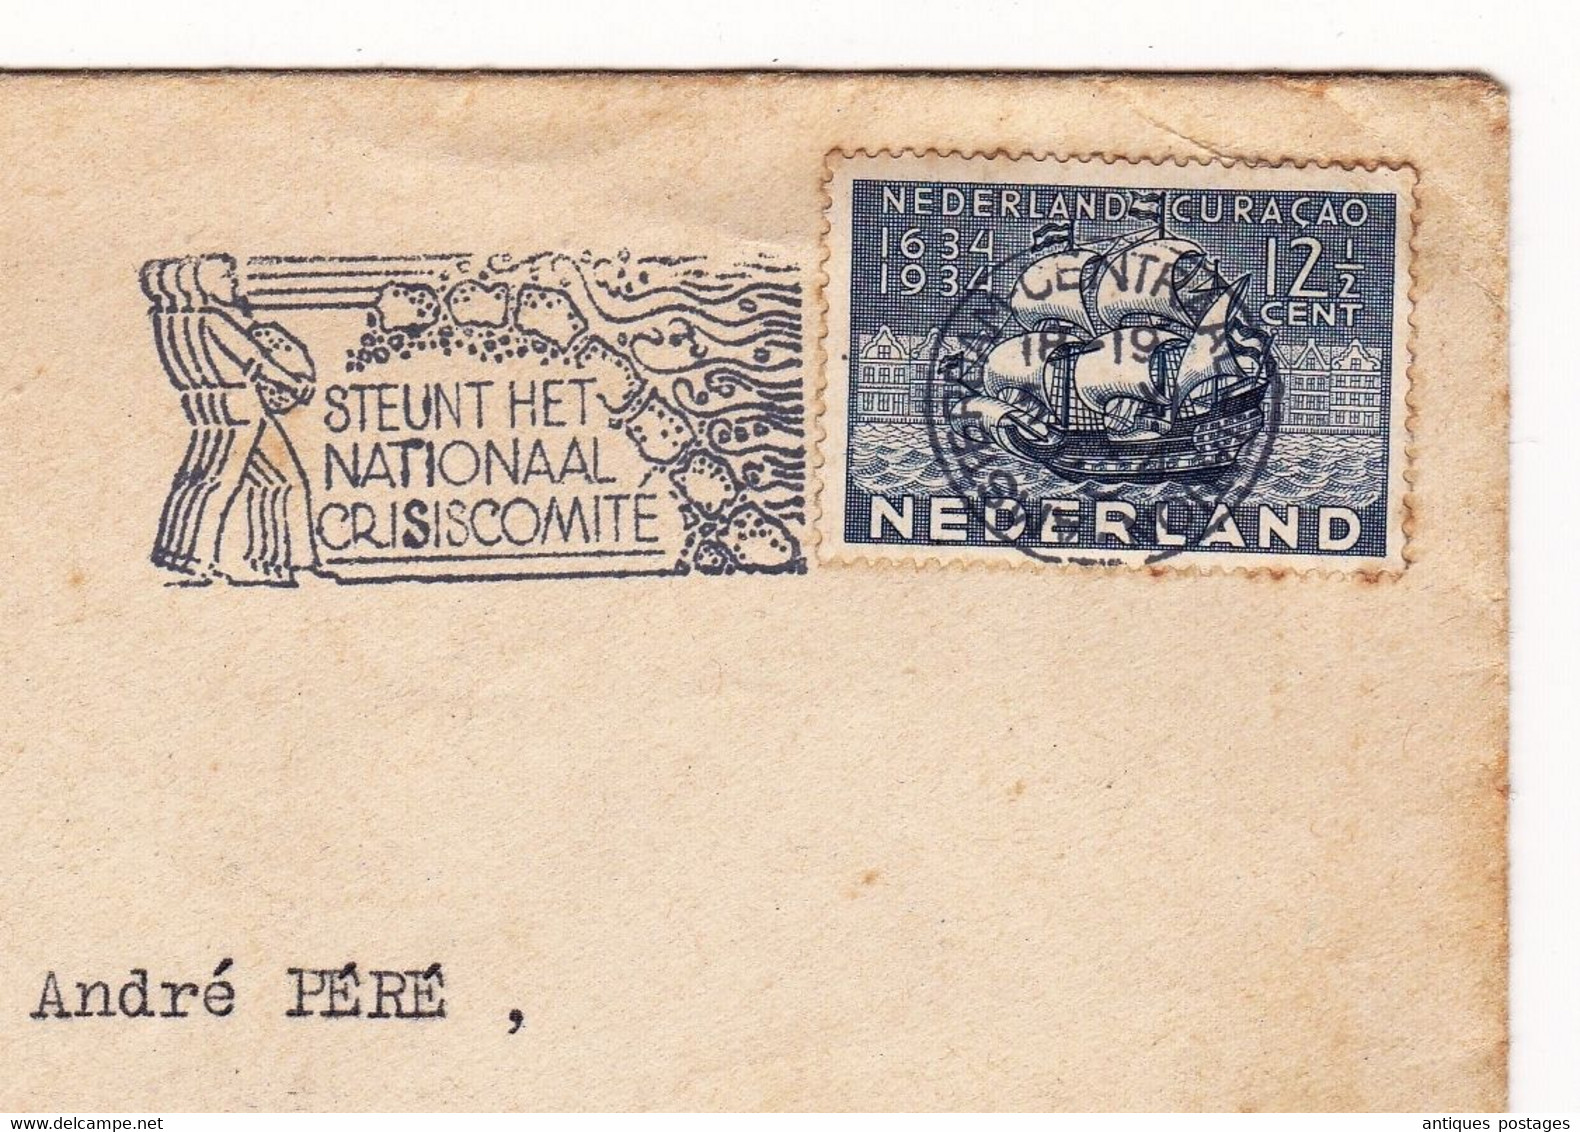 Nederland Amsterdam Curaçao Samadet Landes 1934 Steunt Het Nationaal Crisiscomite La Belle France Arènes De Nîmes - Storia Postale